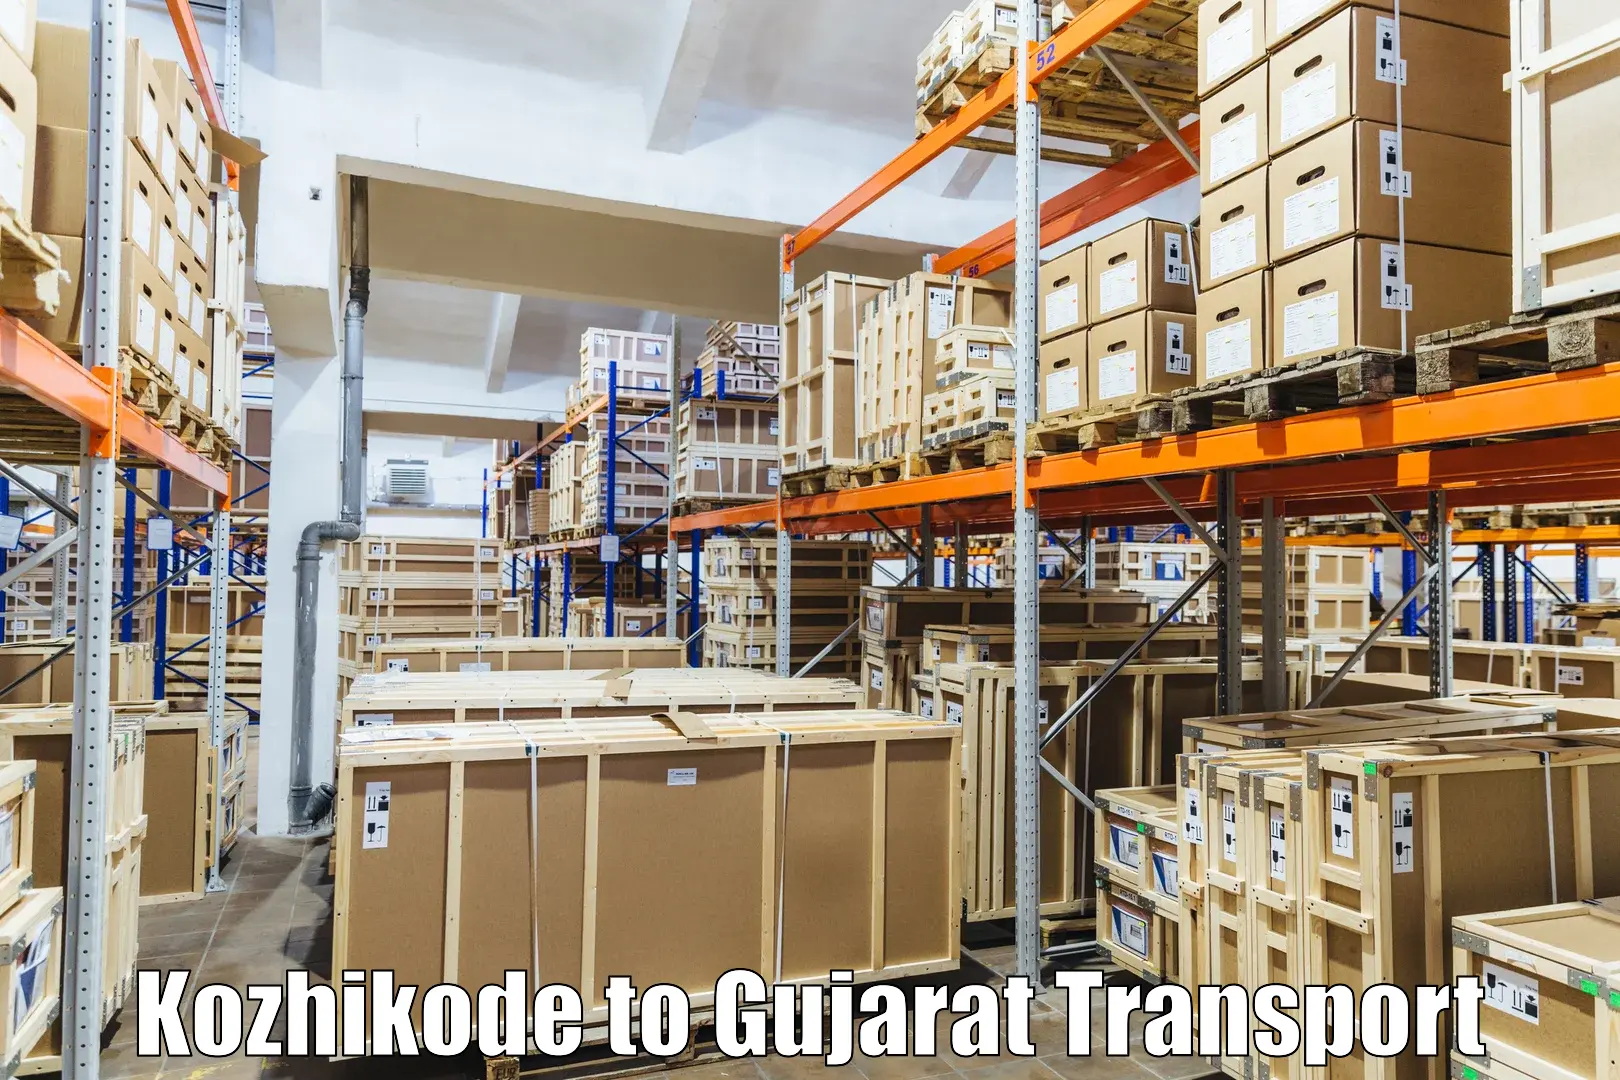 Nearest transport service Kozhikode to Kalol Gujarat